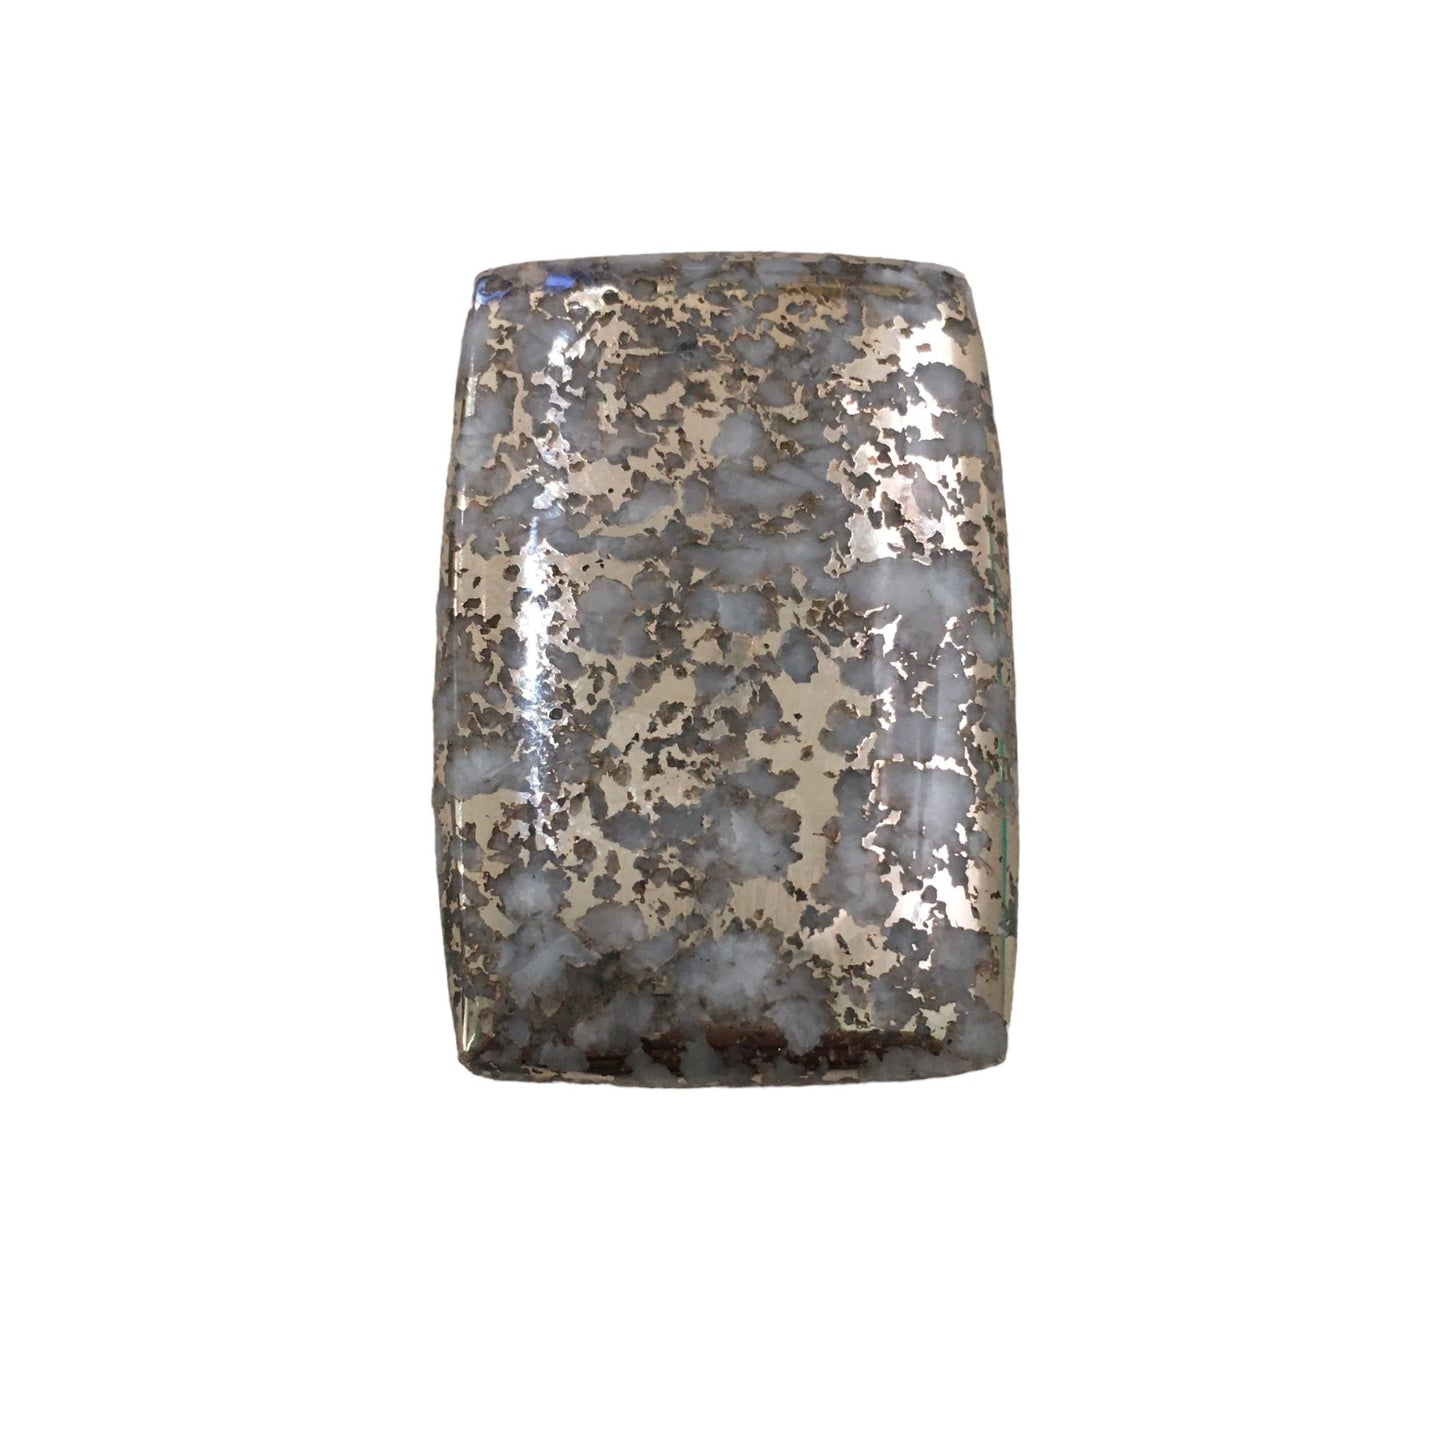 Native Silver Ore 19.95.g Cabochon - Kingdom Jewelry